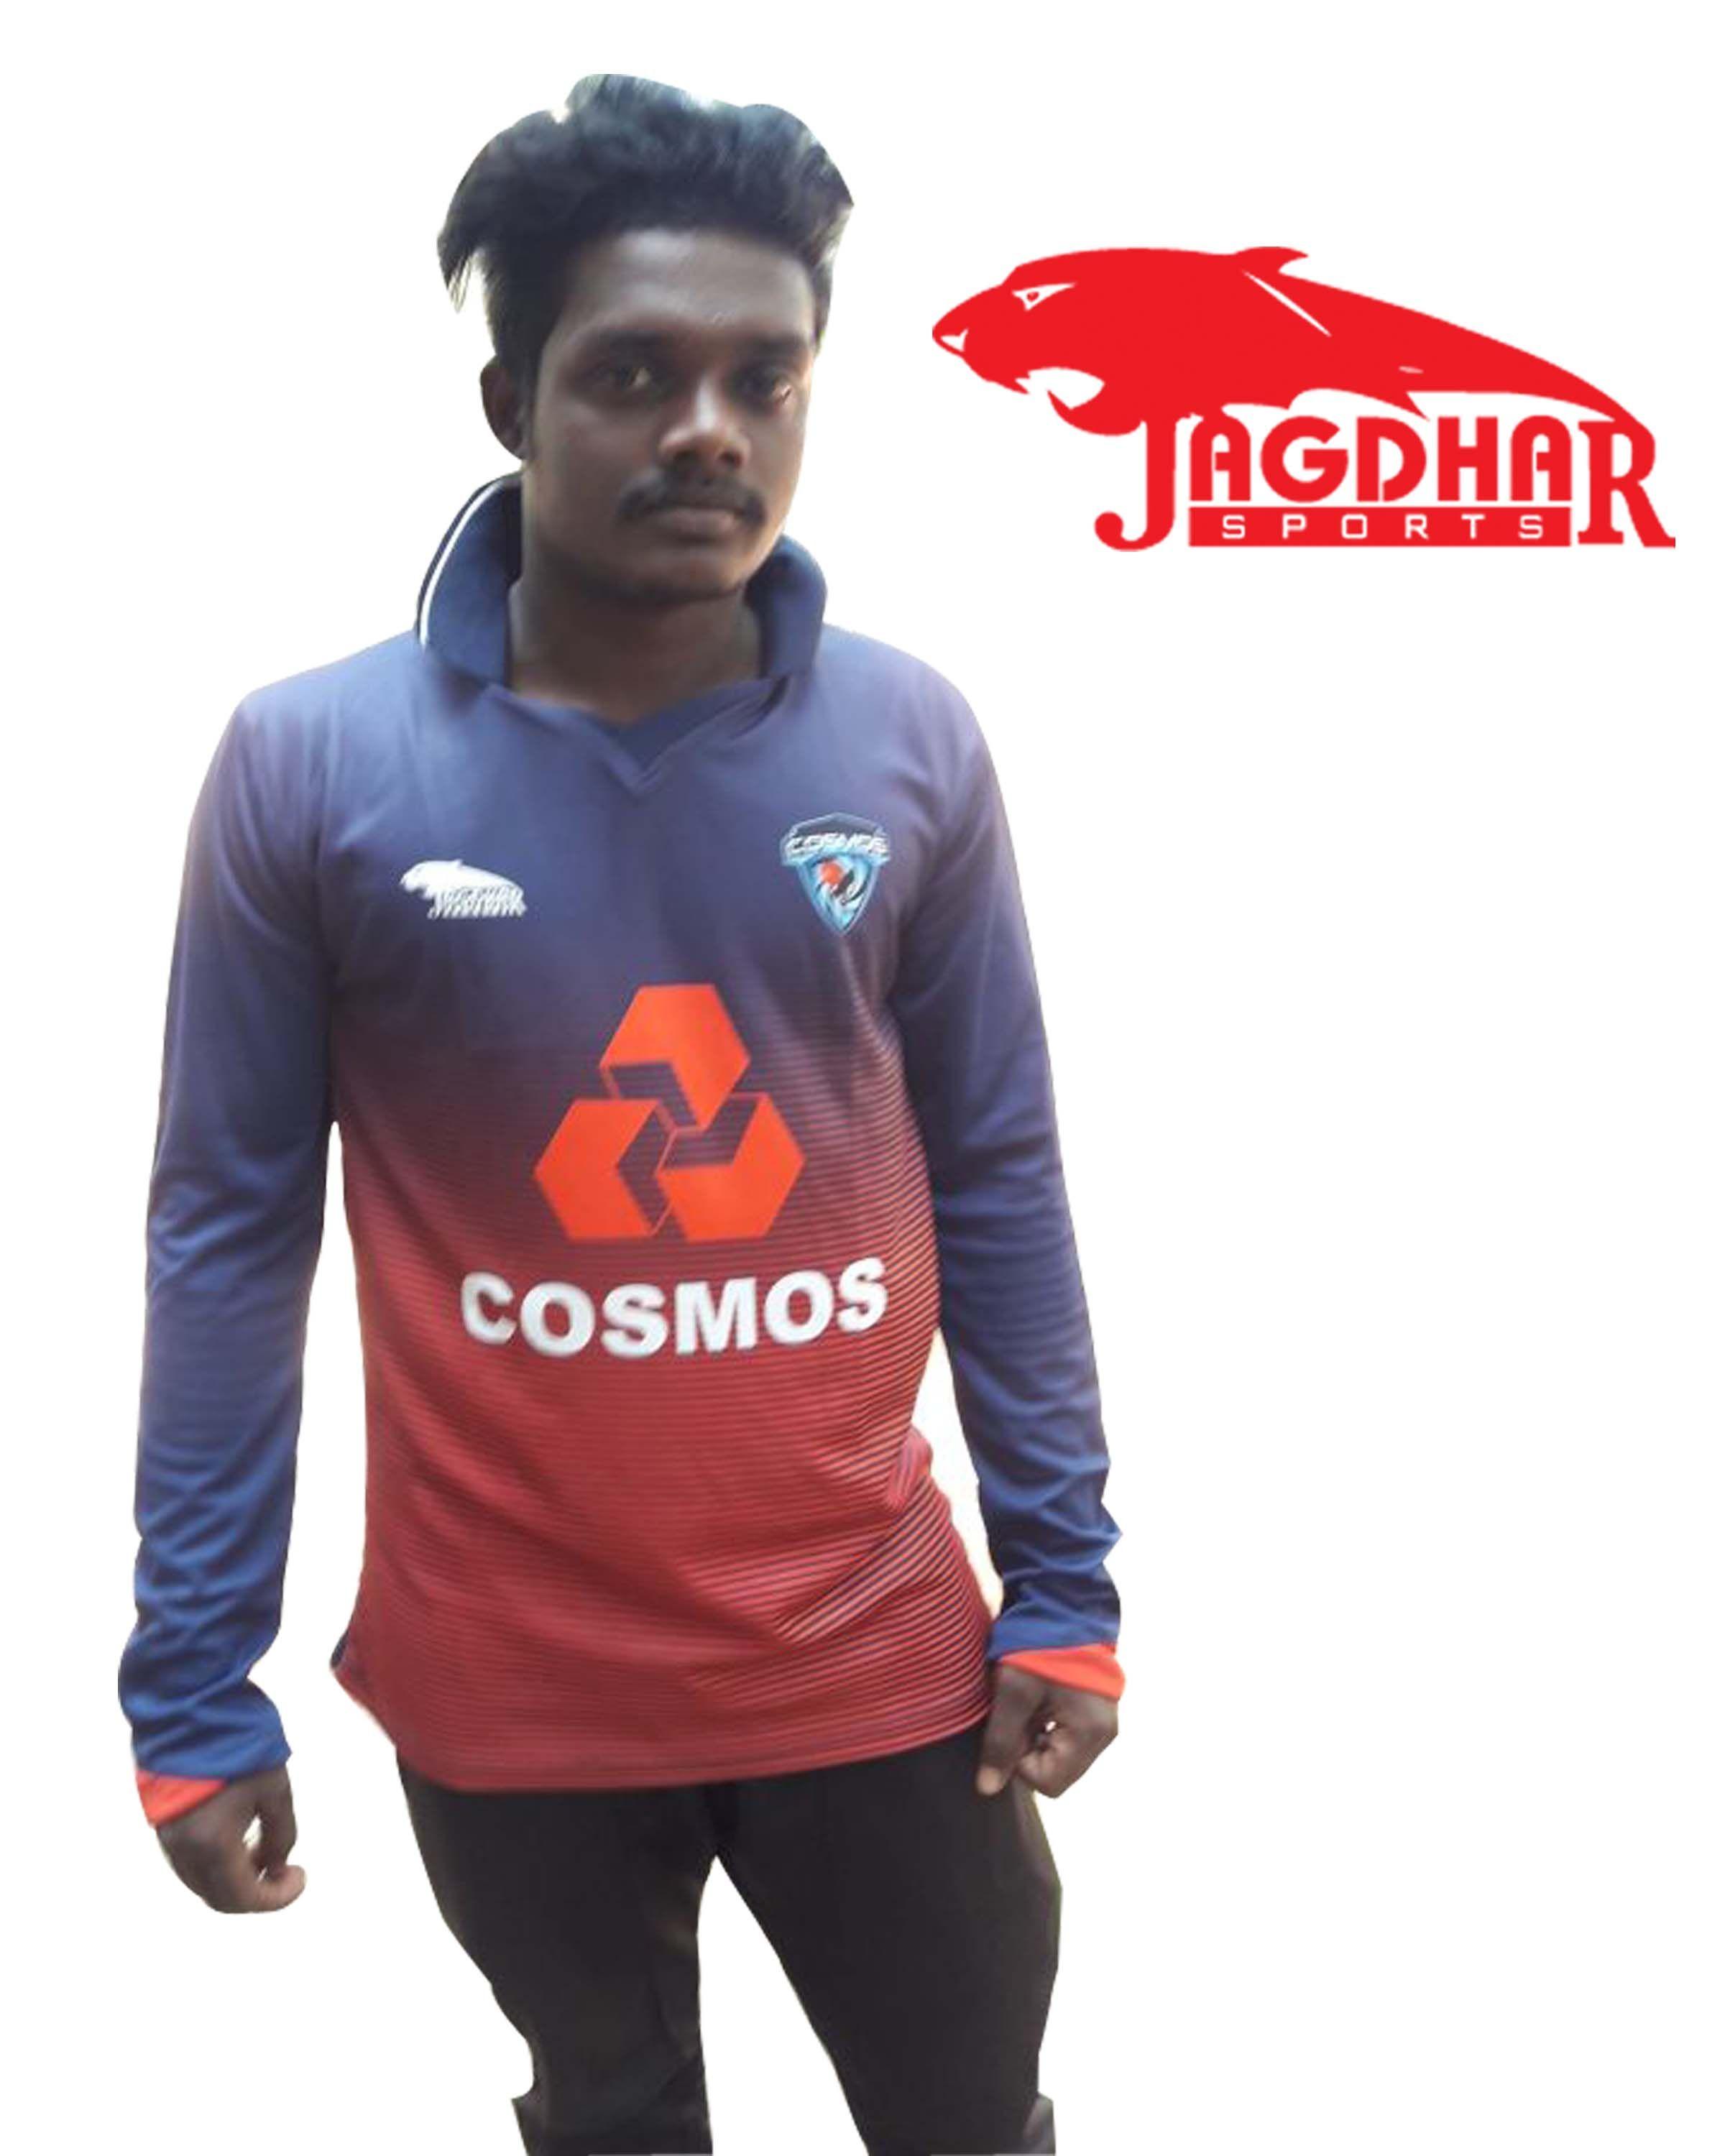 Jagdhar Sports